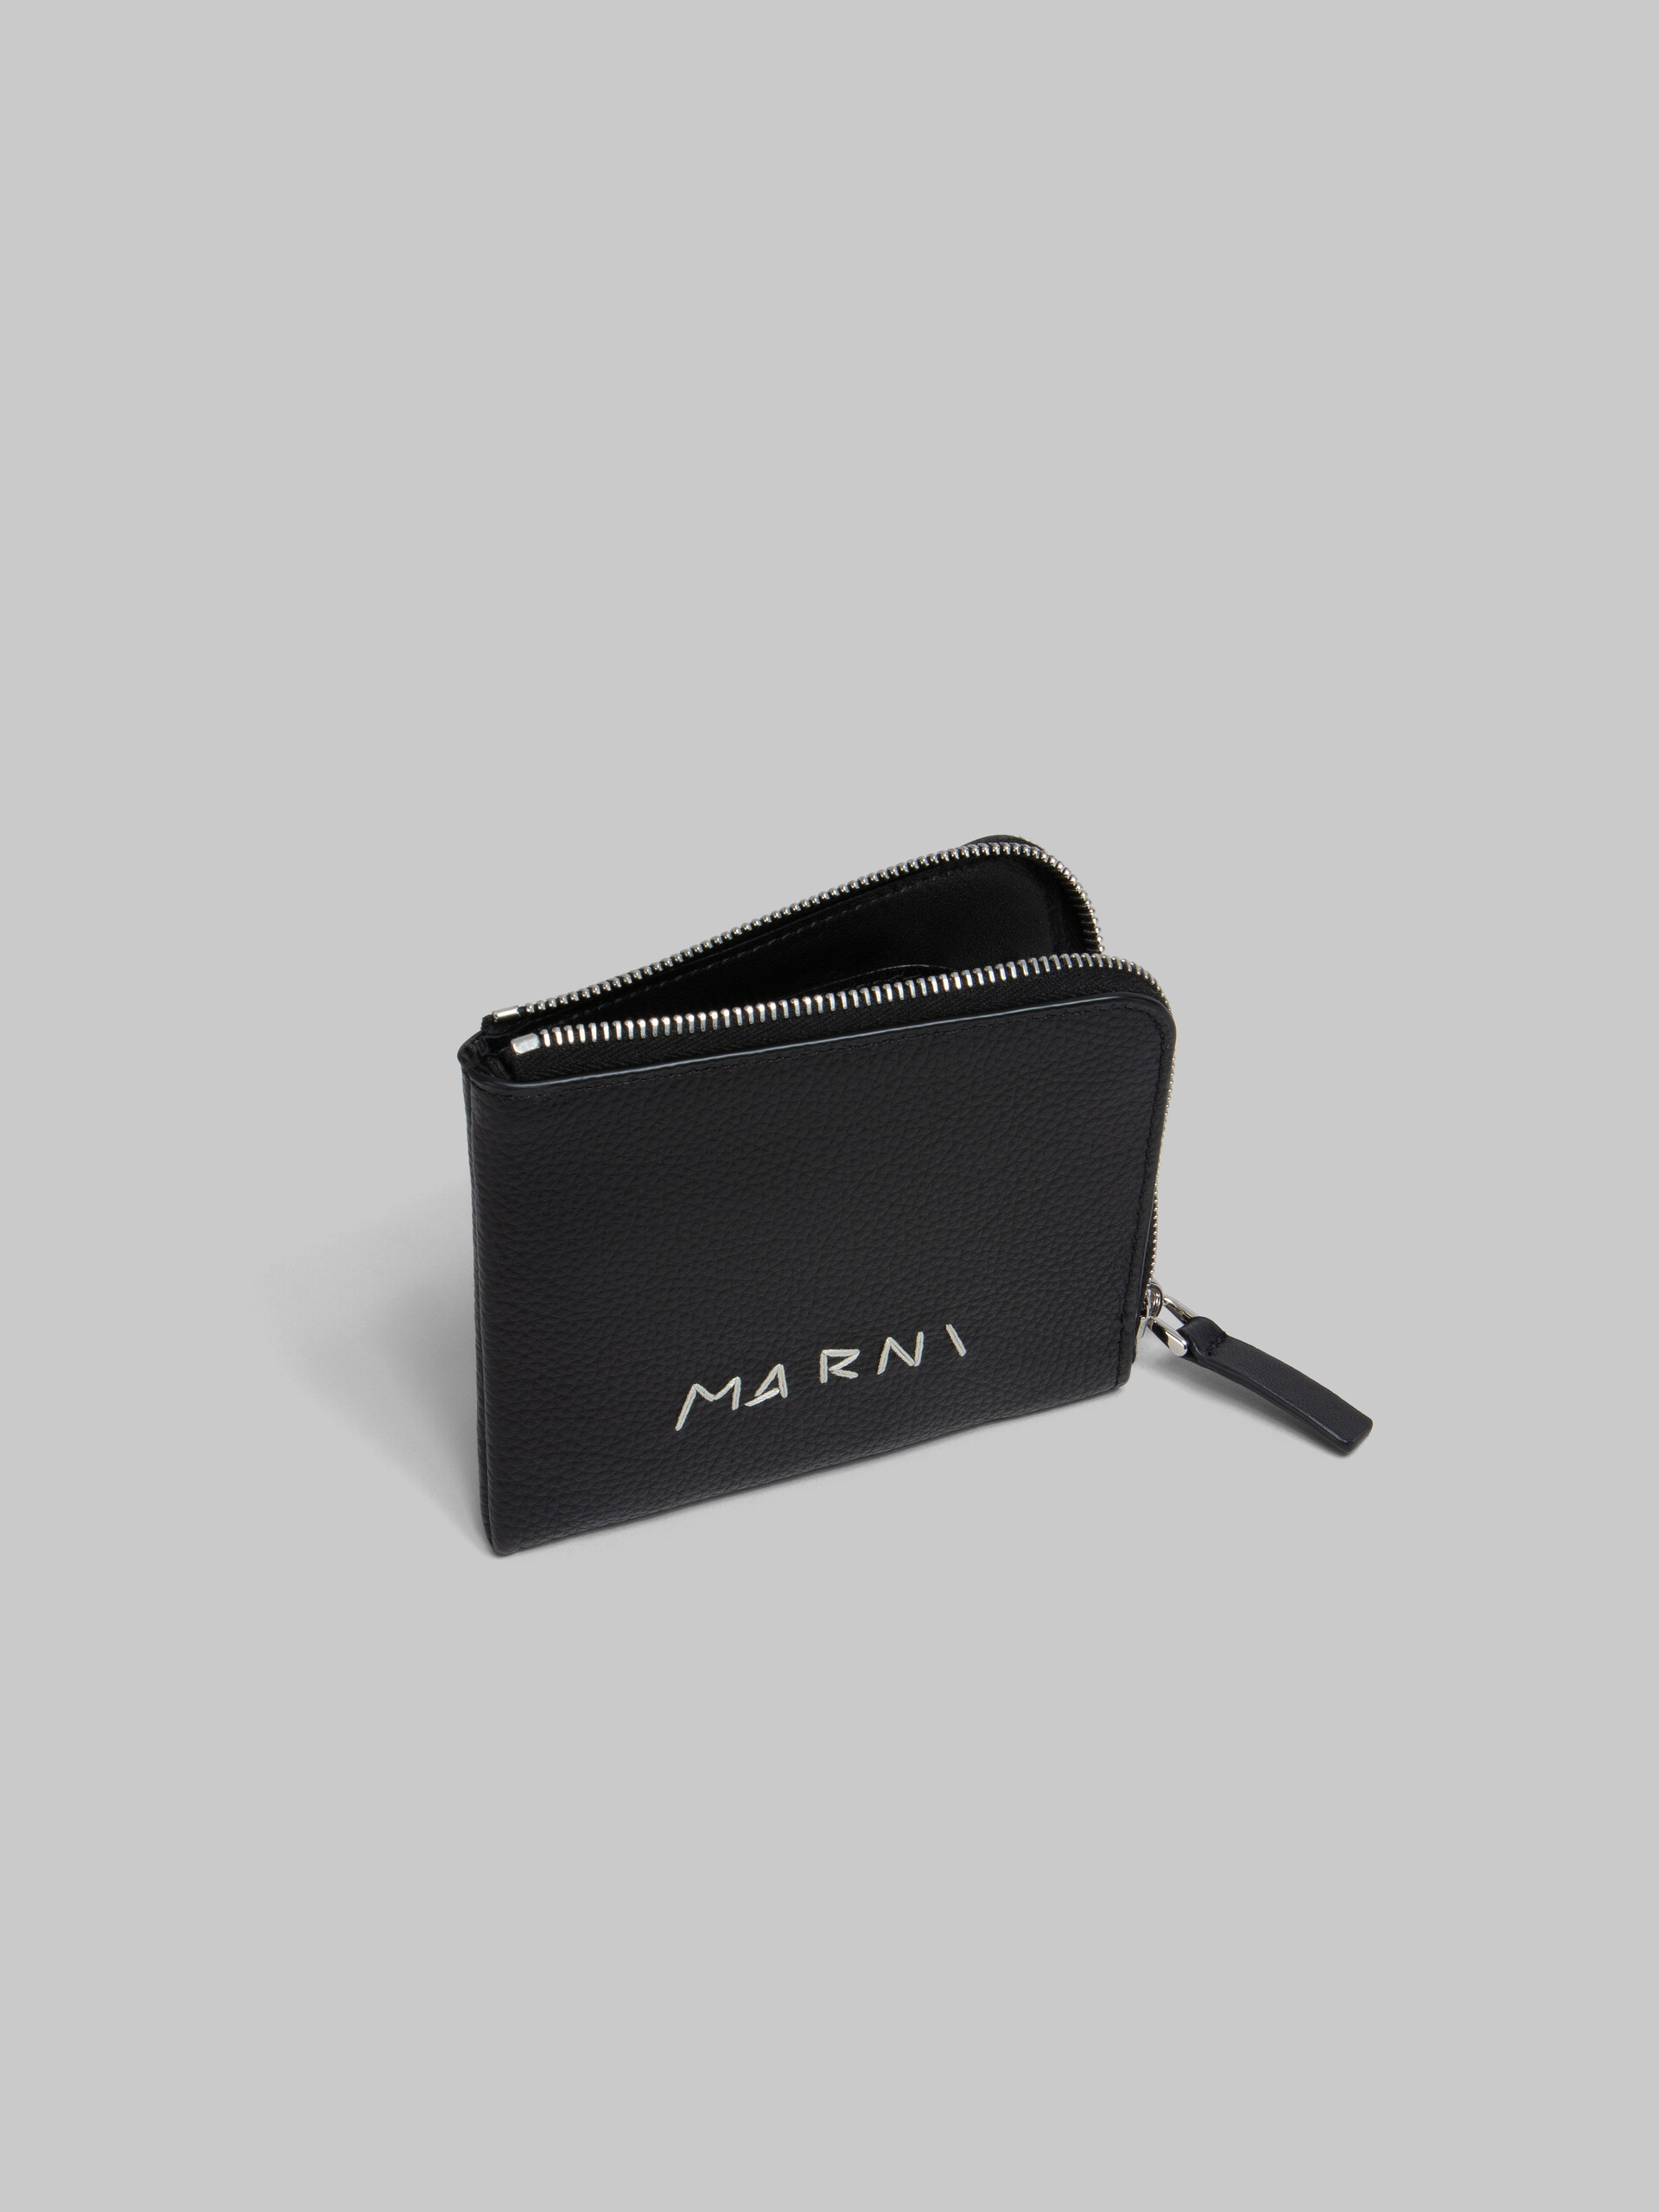 Portefeuille zippé en cuir noir avec effet raccommodé Marni - Portefeuilles - Image 2